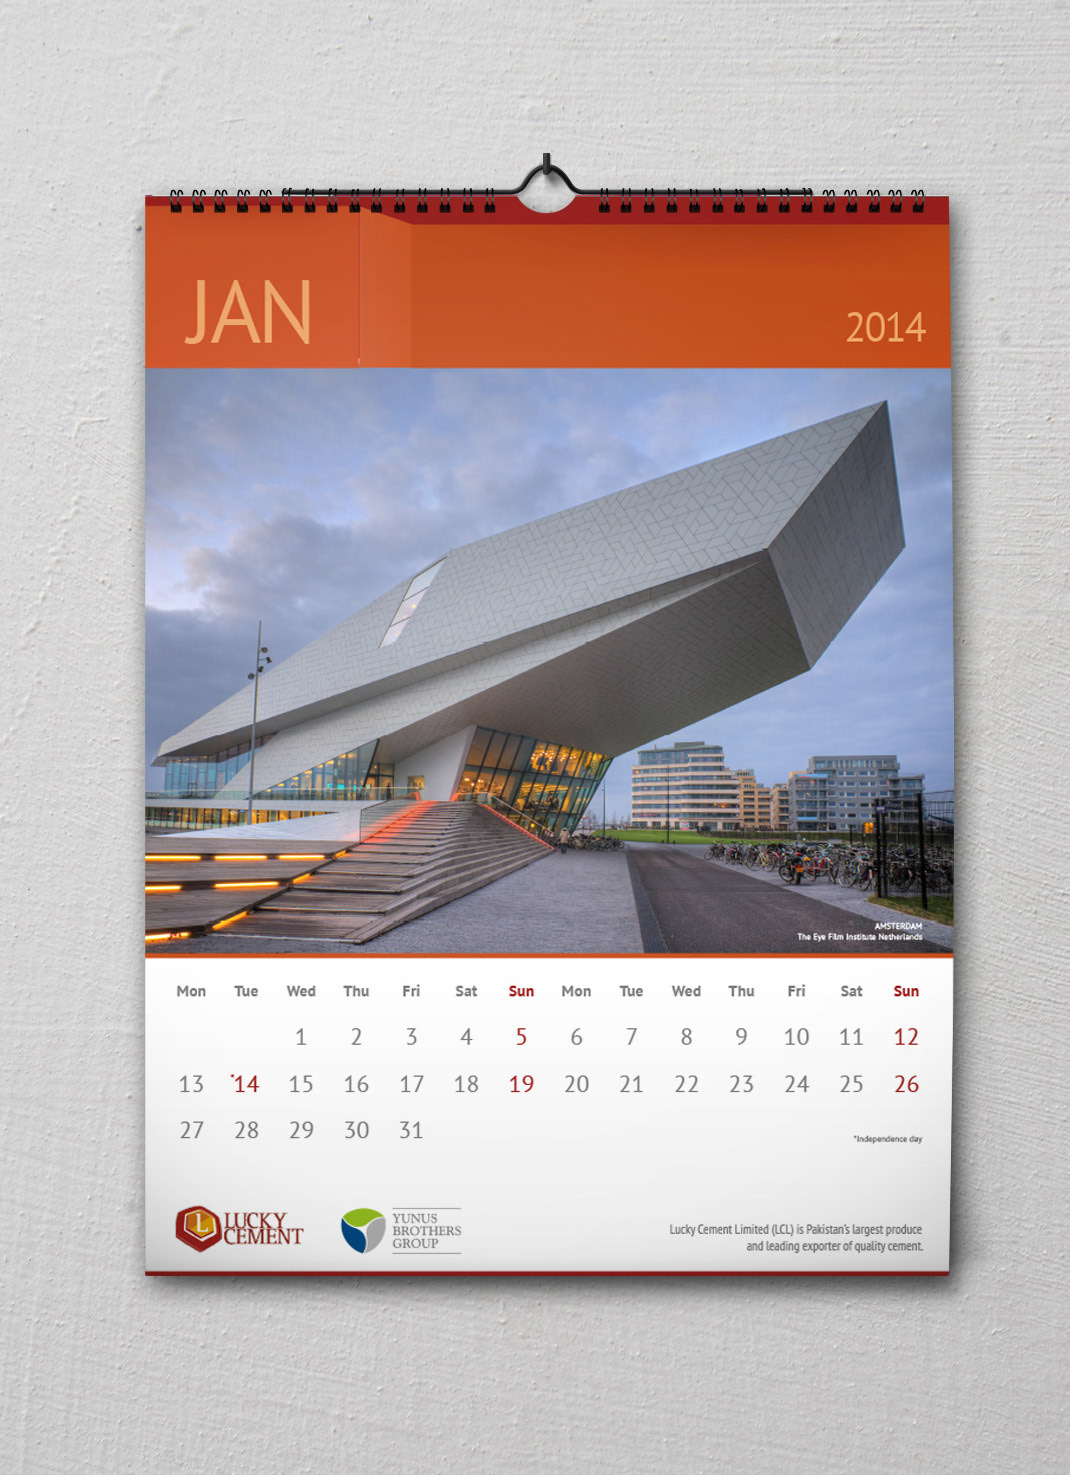 Calendar 2014 calendar Luck Cement wall calendar